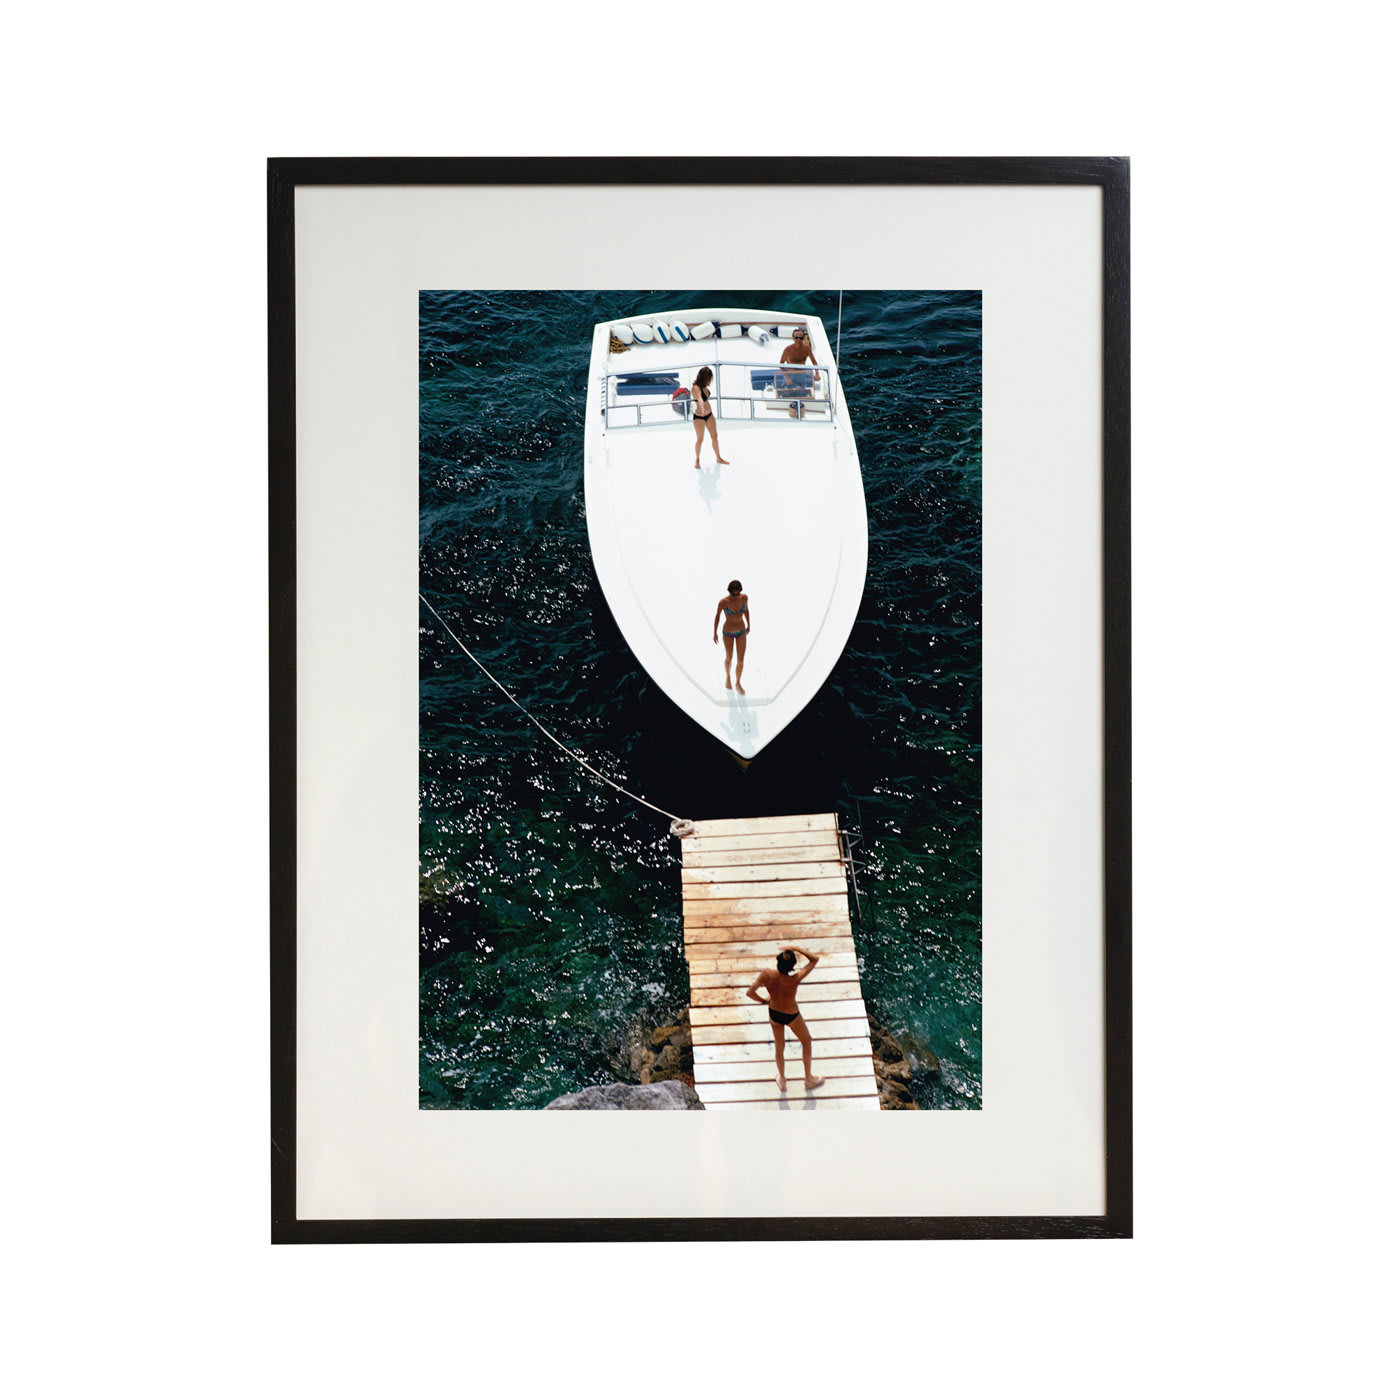 Speedboat Landing Framed Print by Slim Aarons - Getty Images